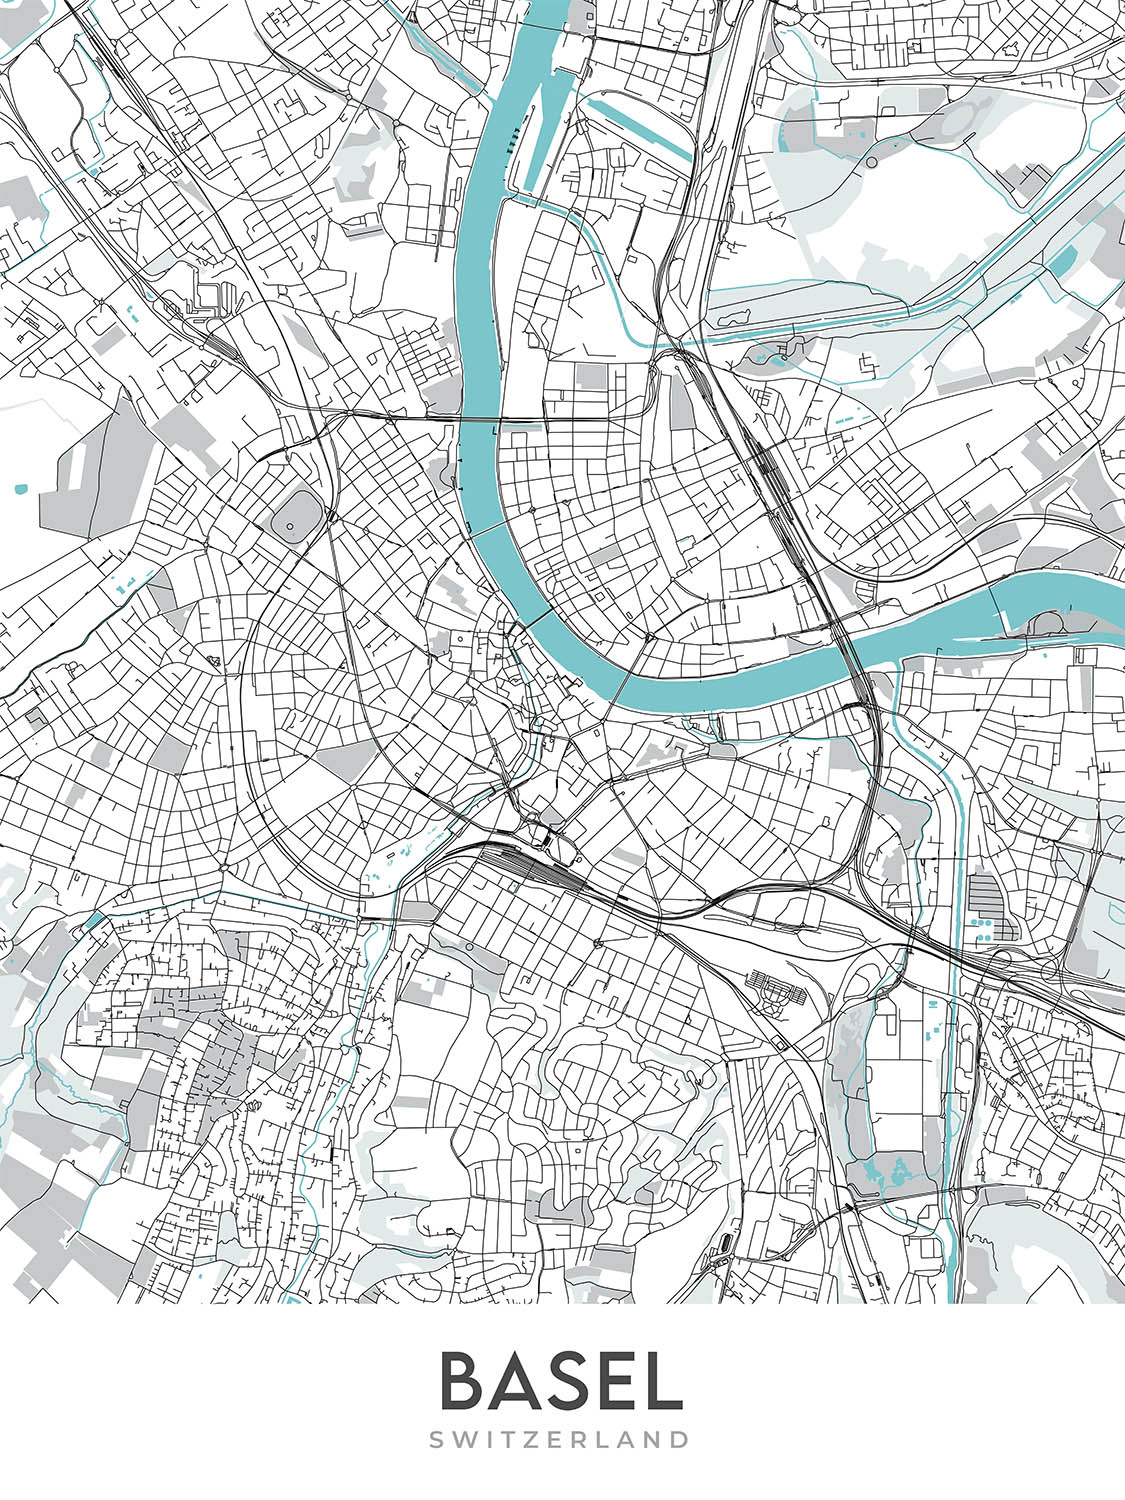 Plan de la ville moderne de Bâle, Suisse : Altstadt, cathédrale de Bâle, zoo, université, fleuve Rhin